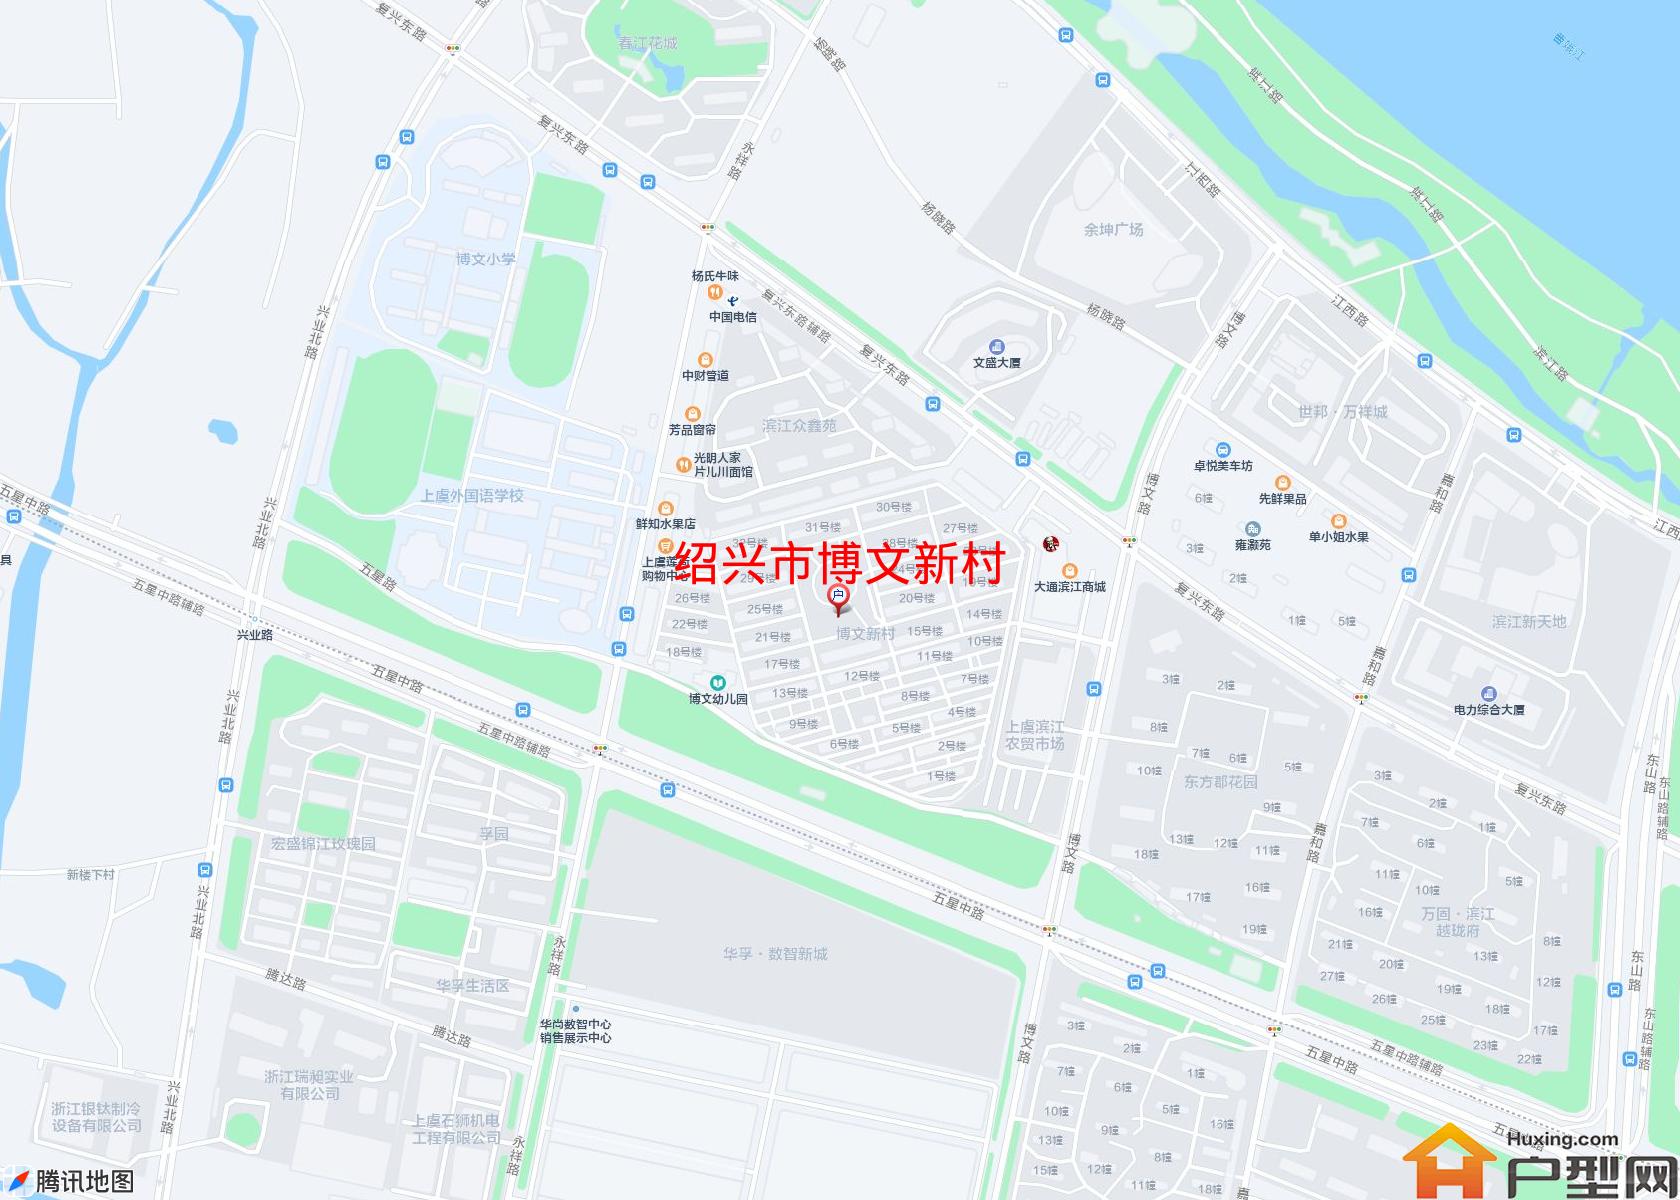 博文新村小区 - 户型网